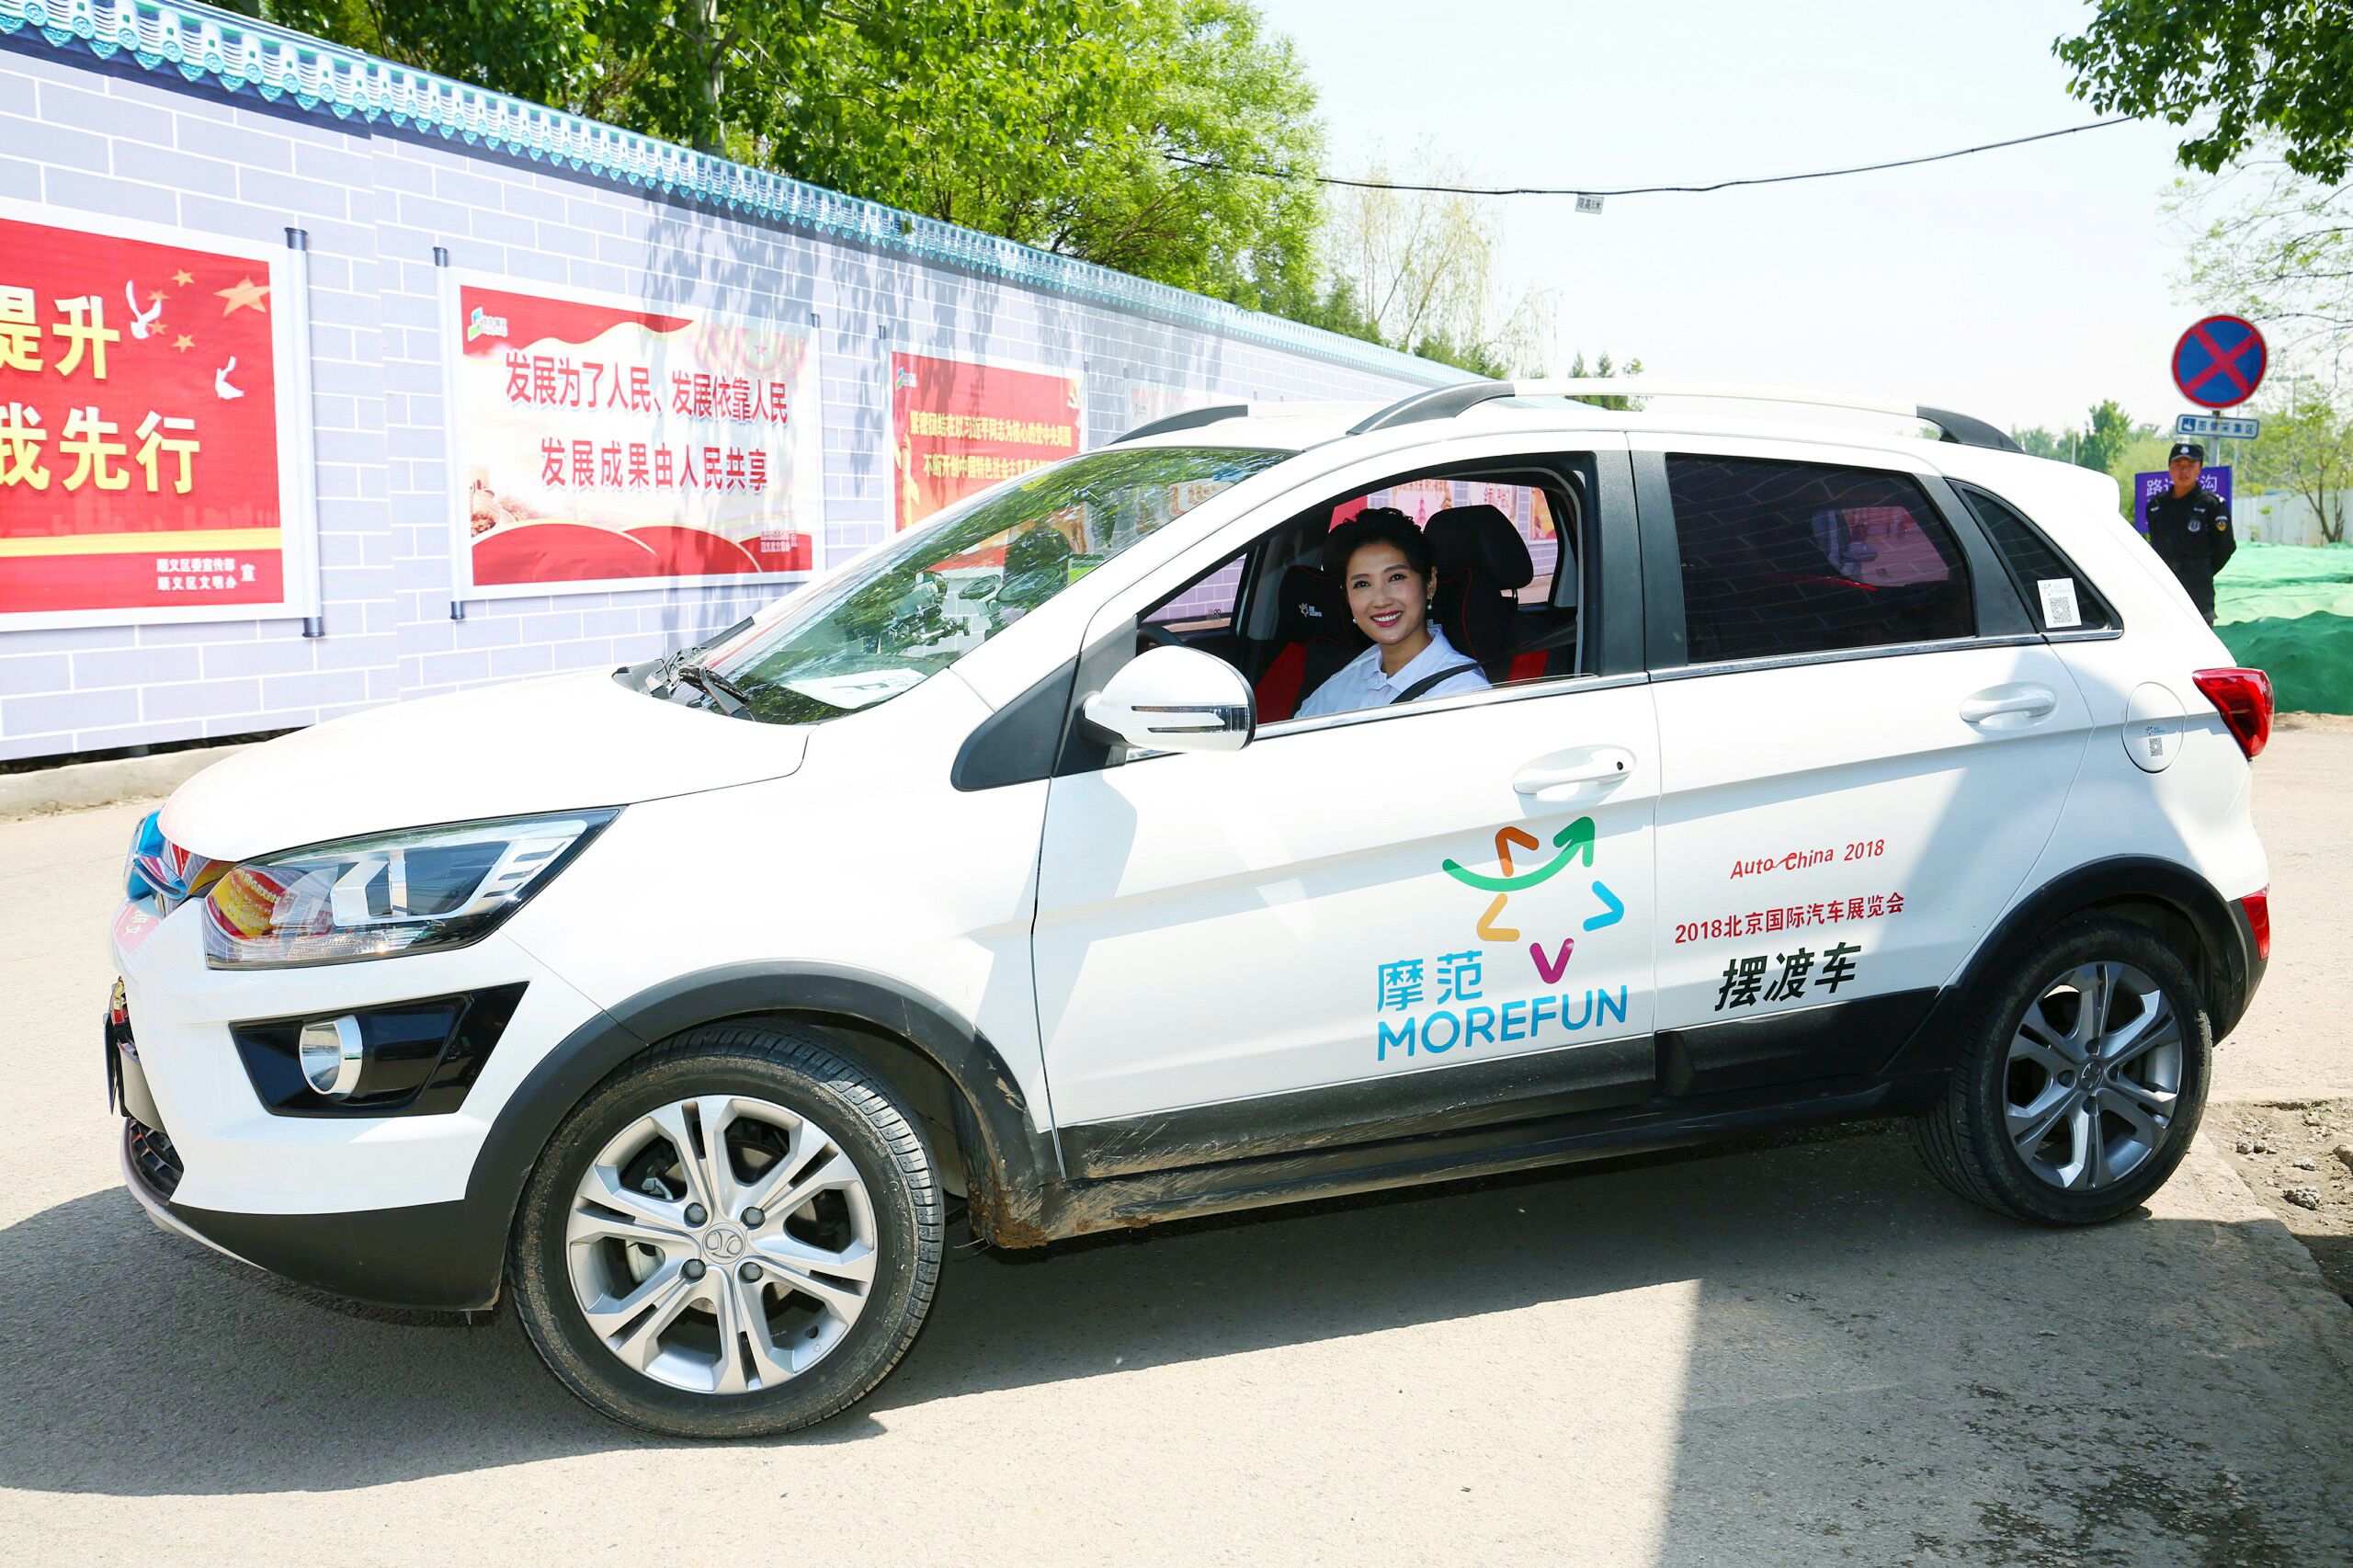 摩范出行服务北京车展 多维共享定义出行新生活